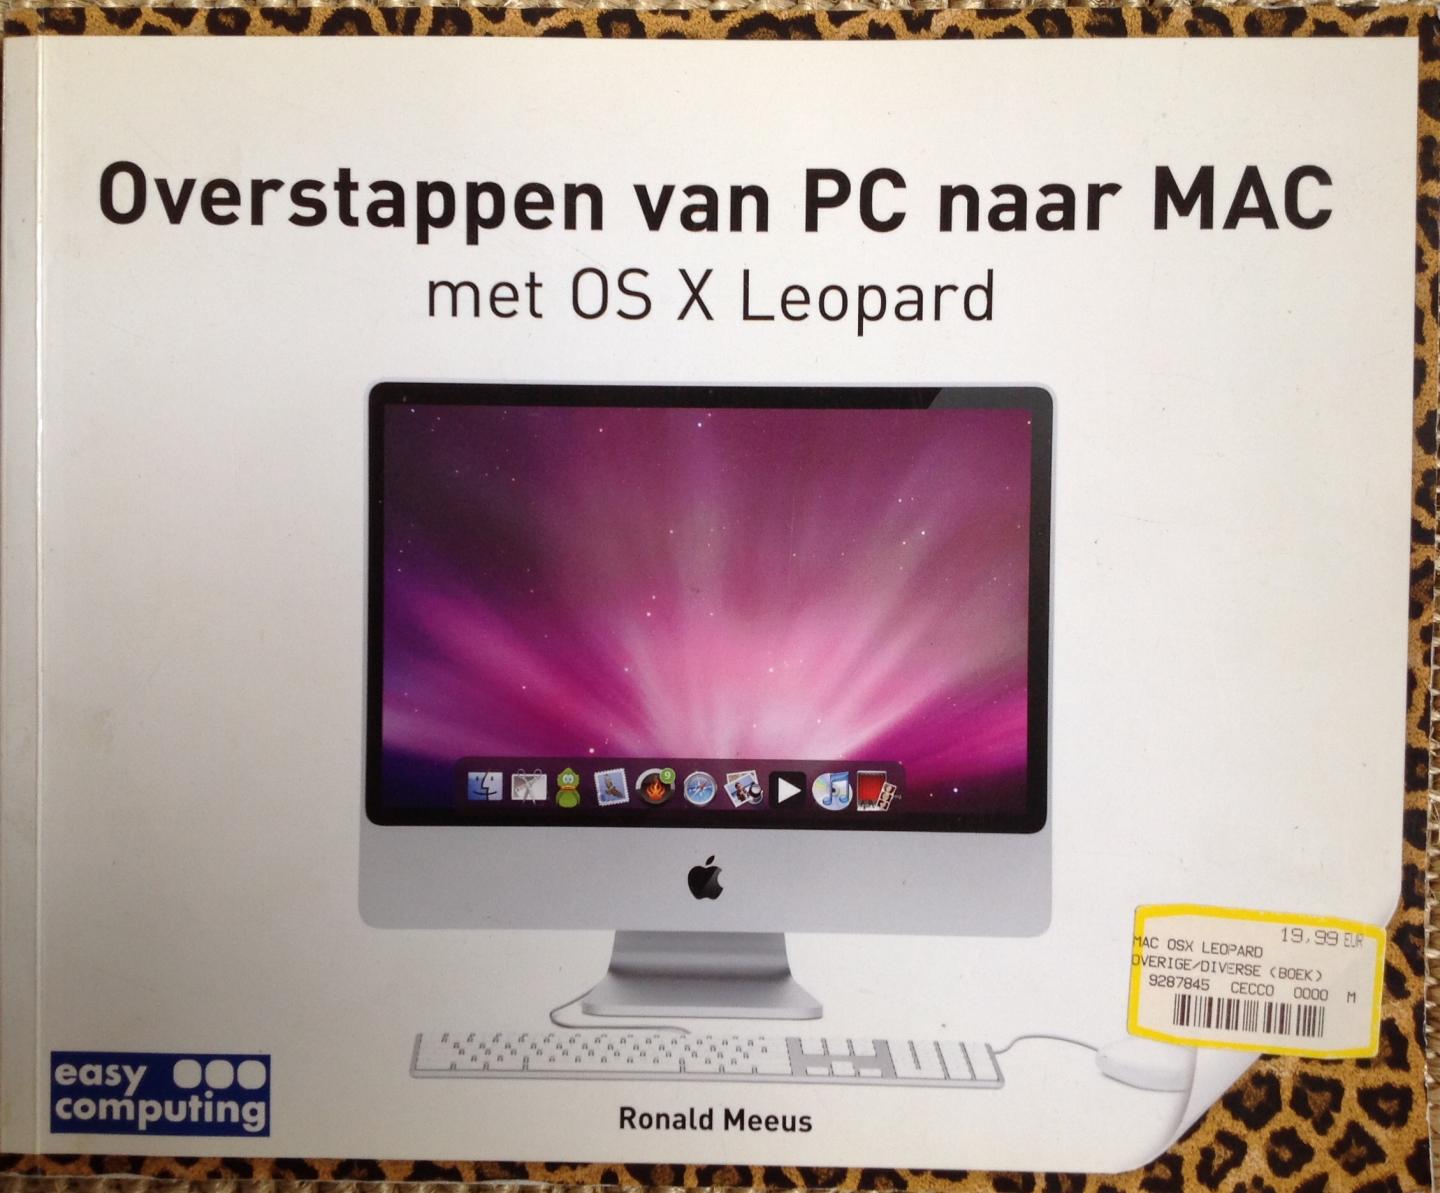 Meeus, Ronald - Overstappen van PC naar MAC met Mac OS X Leopard